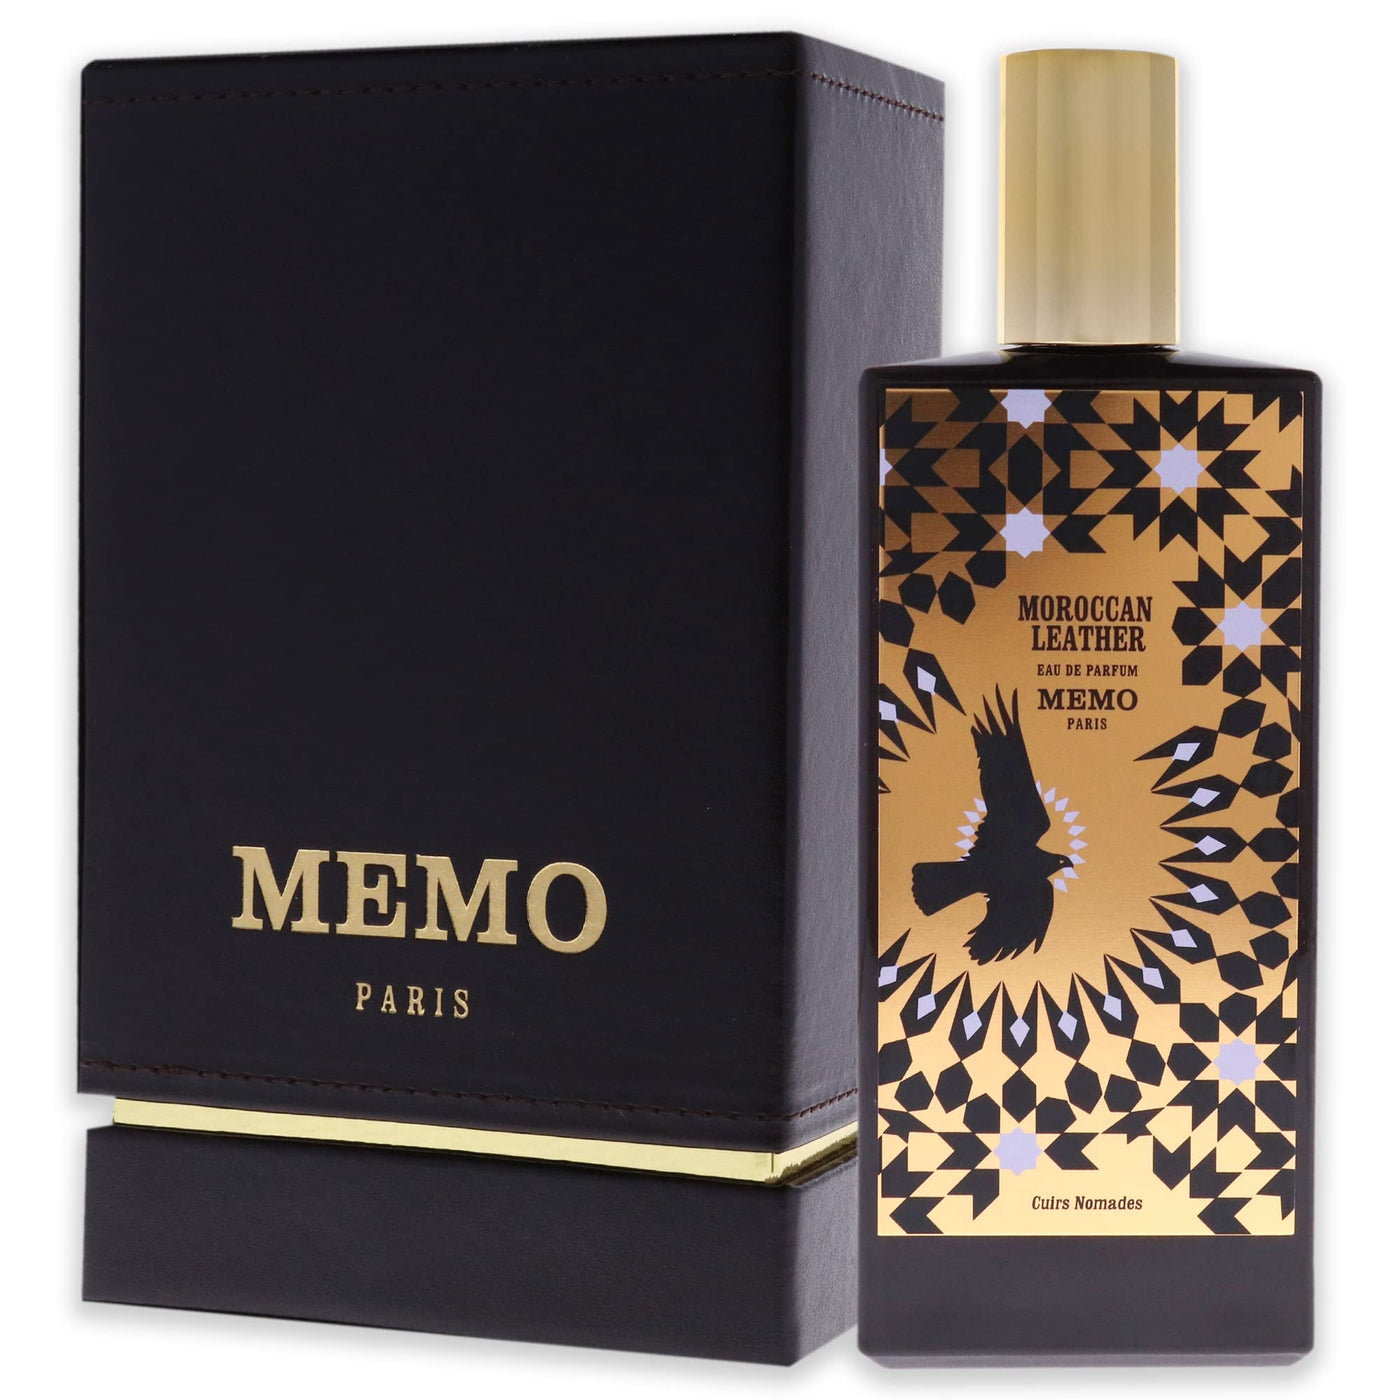 Memo Cuirs Nomades Moroccan Leather For Men And Women Eau De Parfum 75Ml